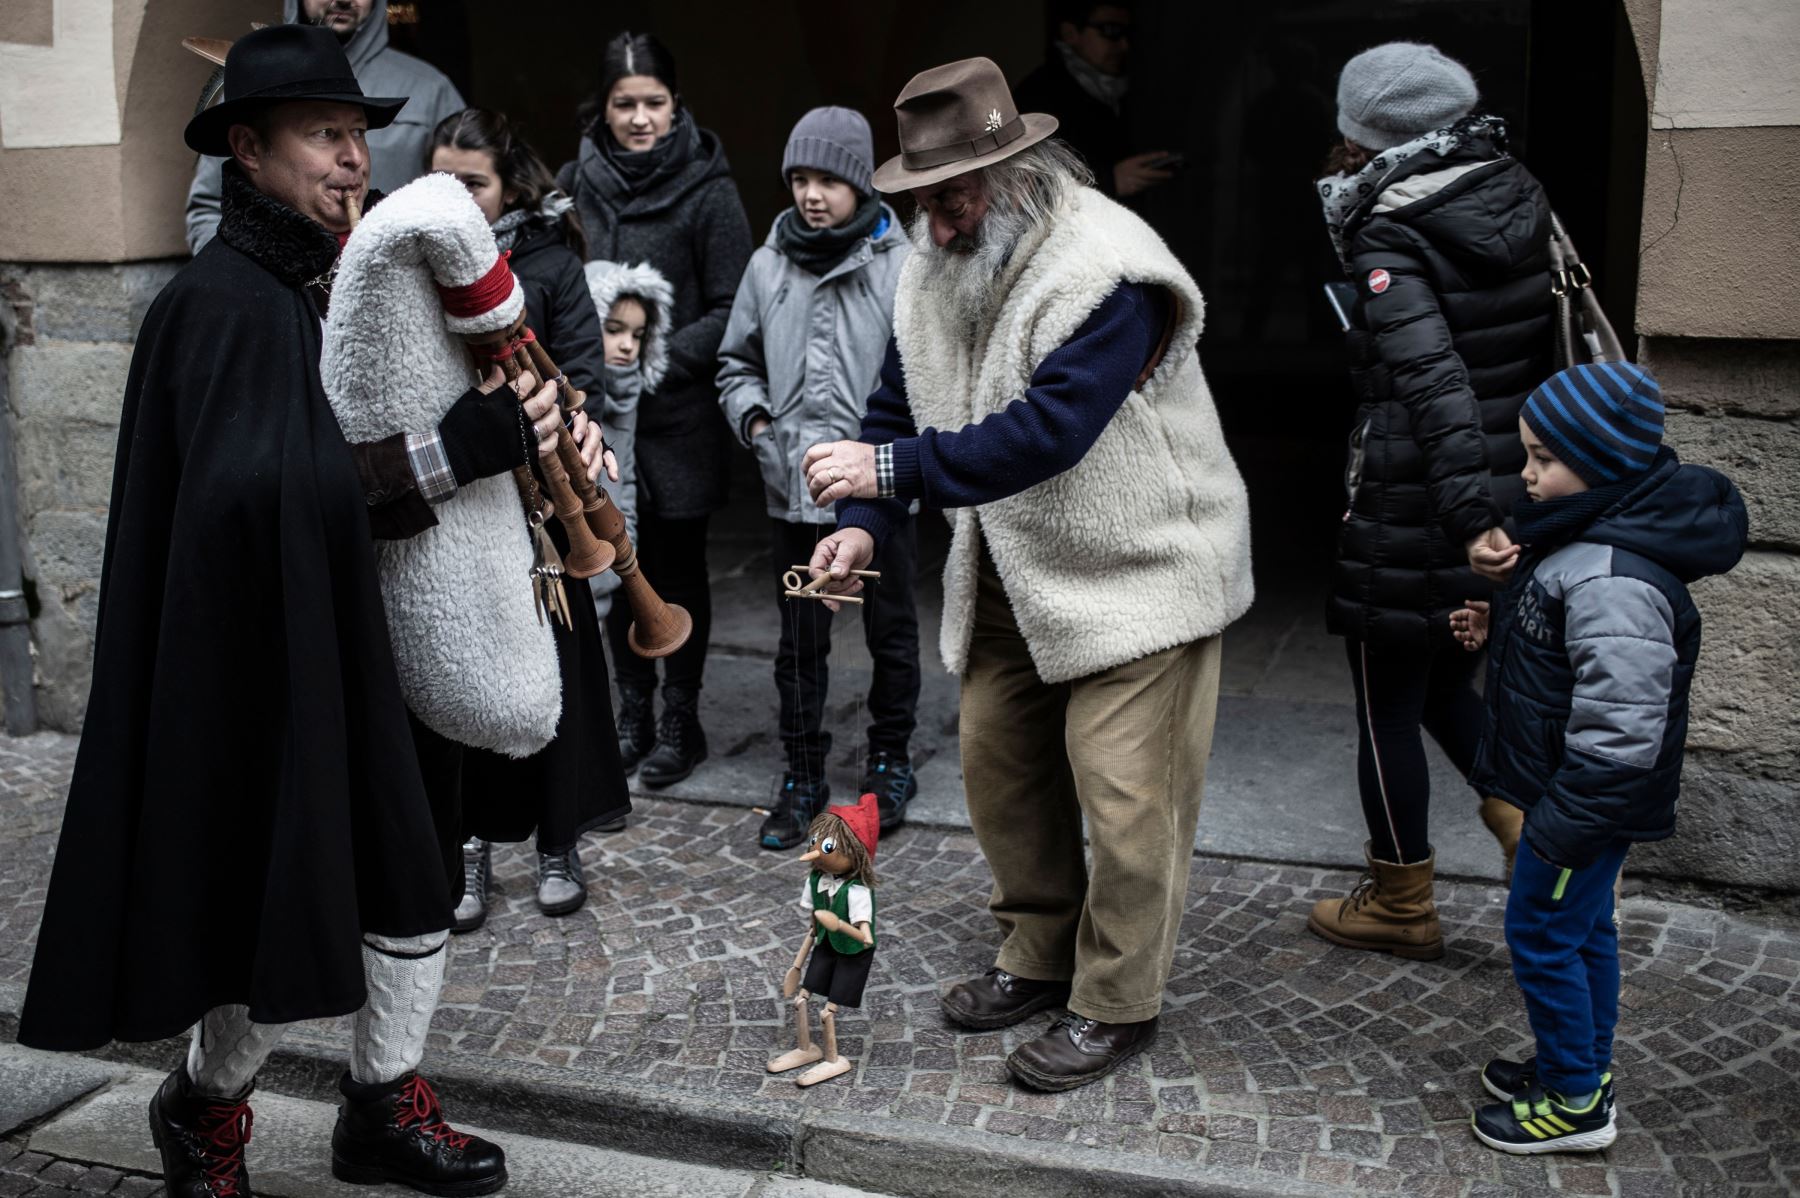 Mario Collino, también conocido como "Prezzemolo" ("Perejil"), presenta su espectáculo en las calles en Busca, cerca de Cuneo, en el norte de Italia Foto: AFP